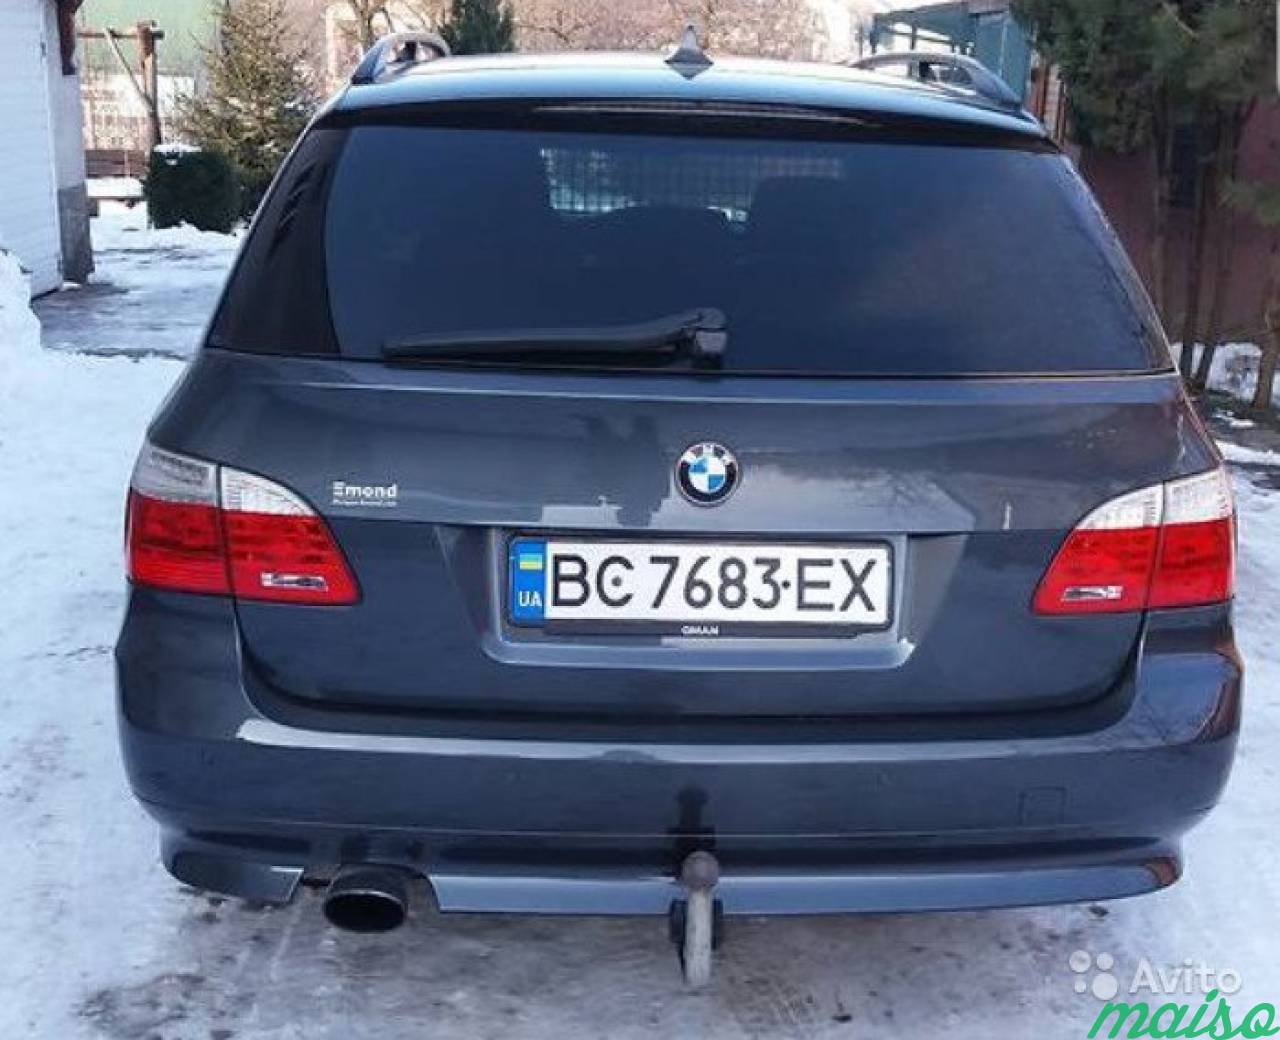 Задний фонарь BMW 5 E61 Рестайлинг. Универсал в Санкт-Петербурге. Фото 1